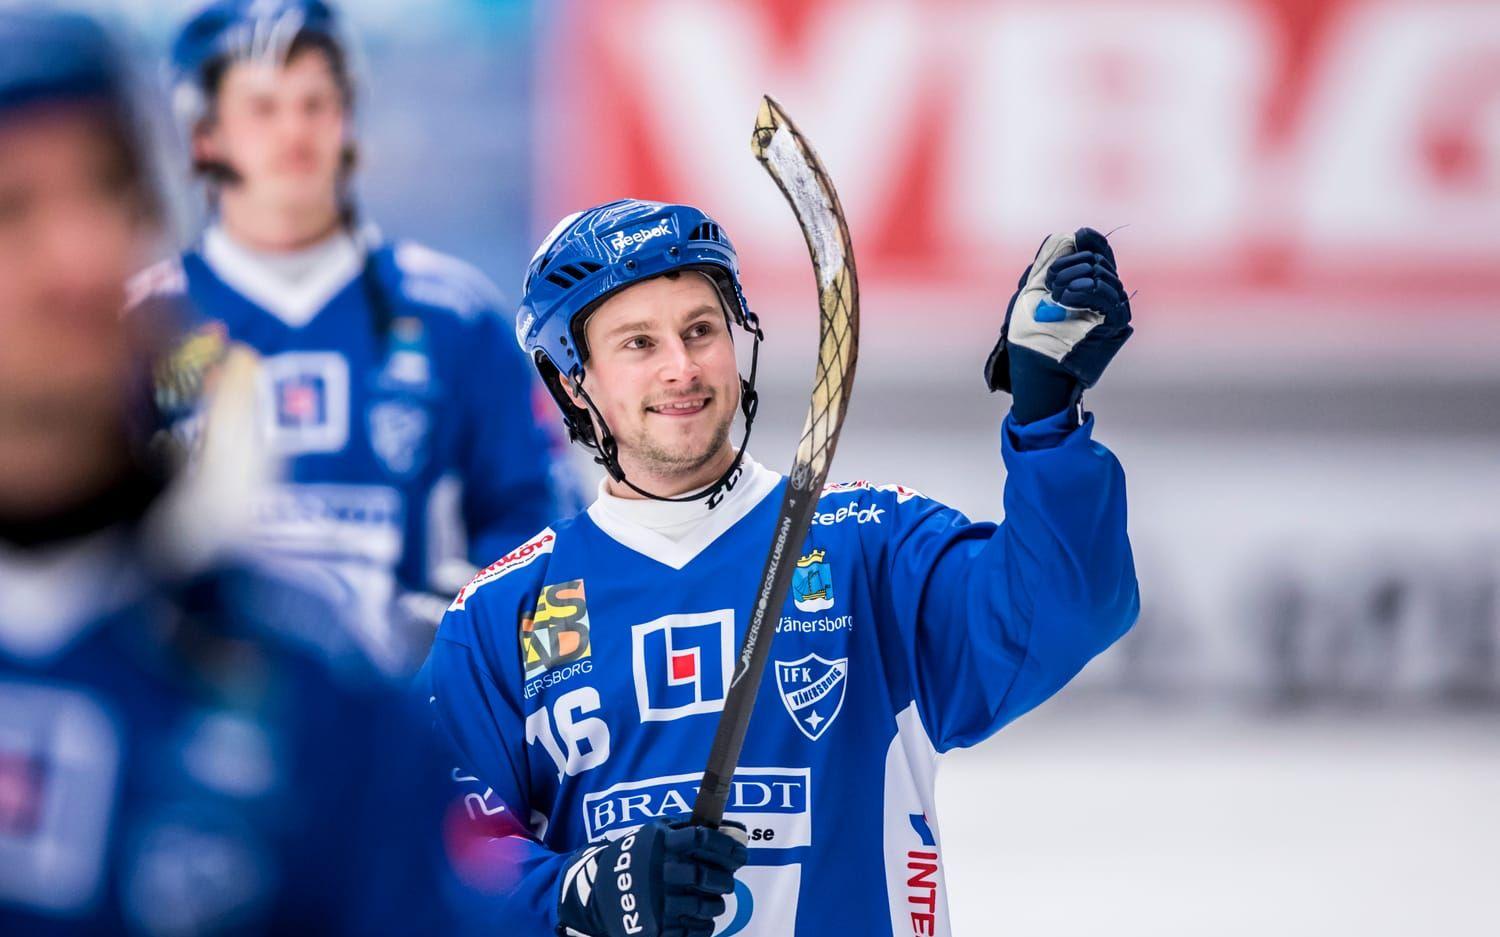 Bild: Sebastian Lamotte. Alexander Mayborn har gjort comeback i IFK Vänersborg och elitserien den här säsongen och mot Tellus gjorde han sina två första mål i högsta serien sedan tiden i Sirius för fyra år sedan. "Det är det här man har tränat så hårt för", sa "Maja" efter matchen.